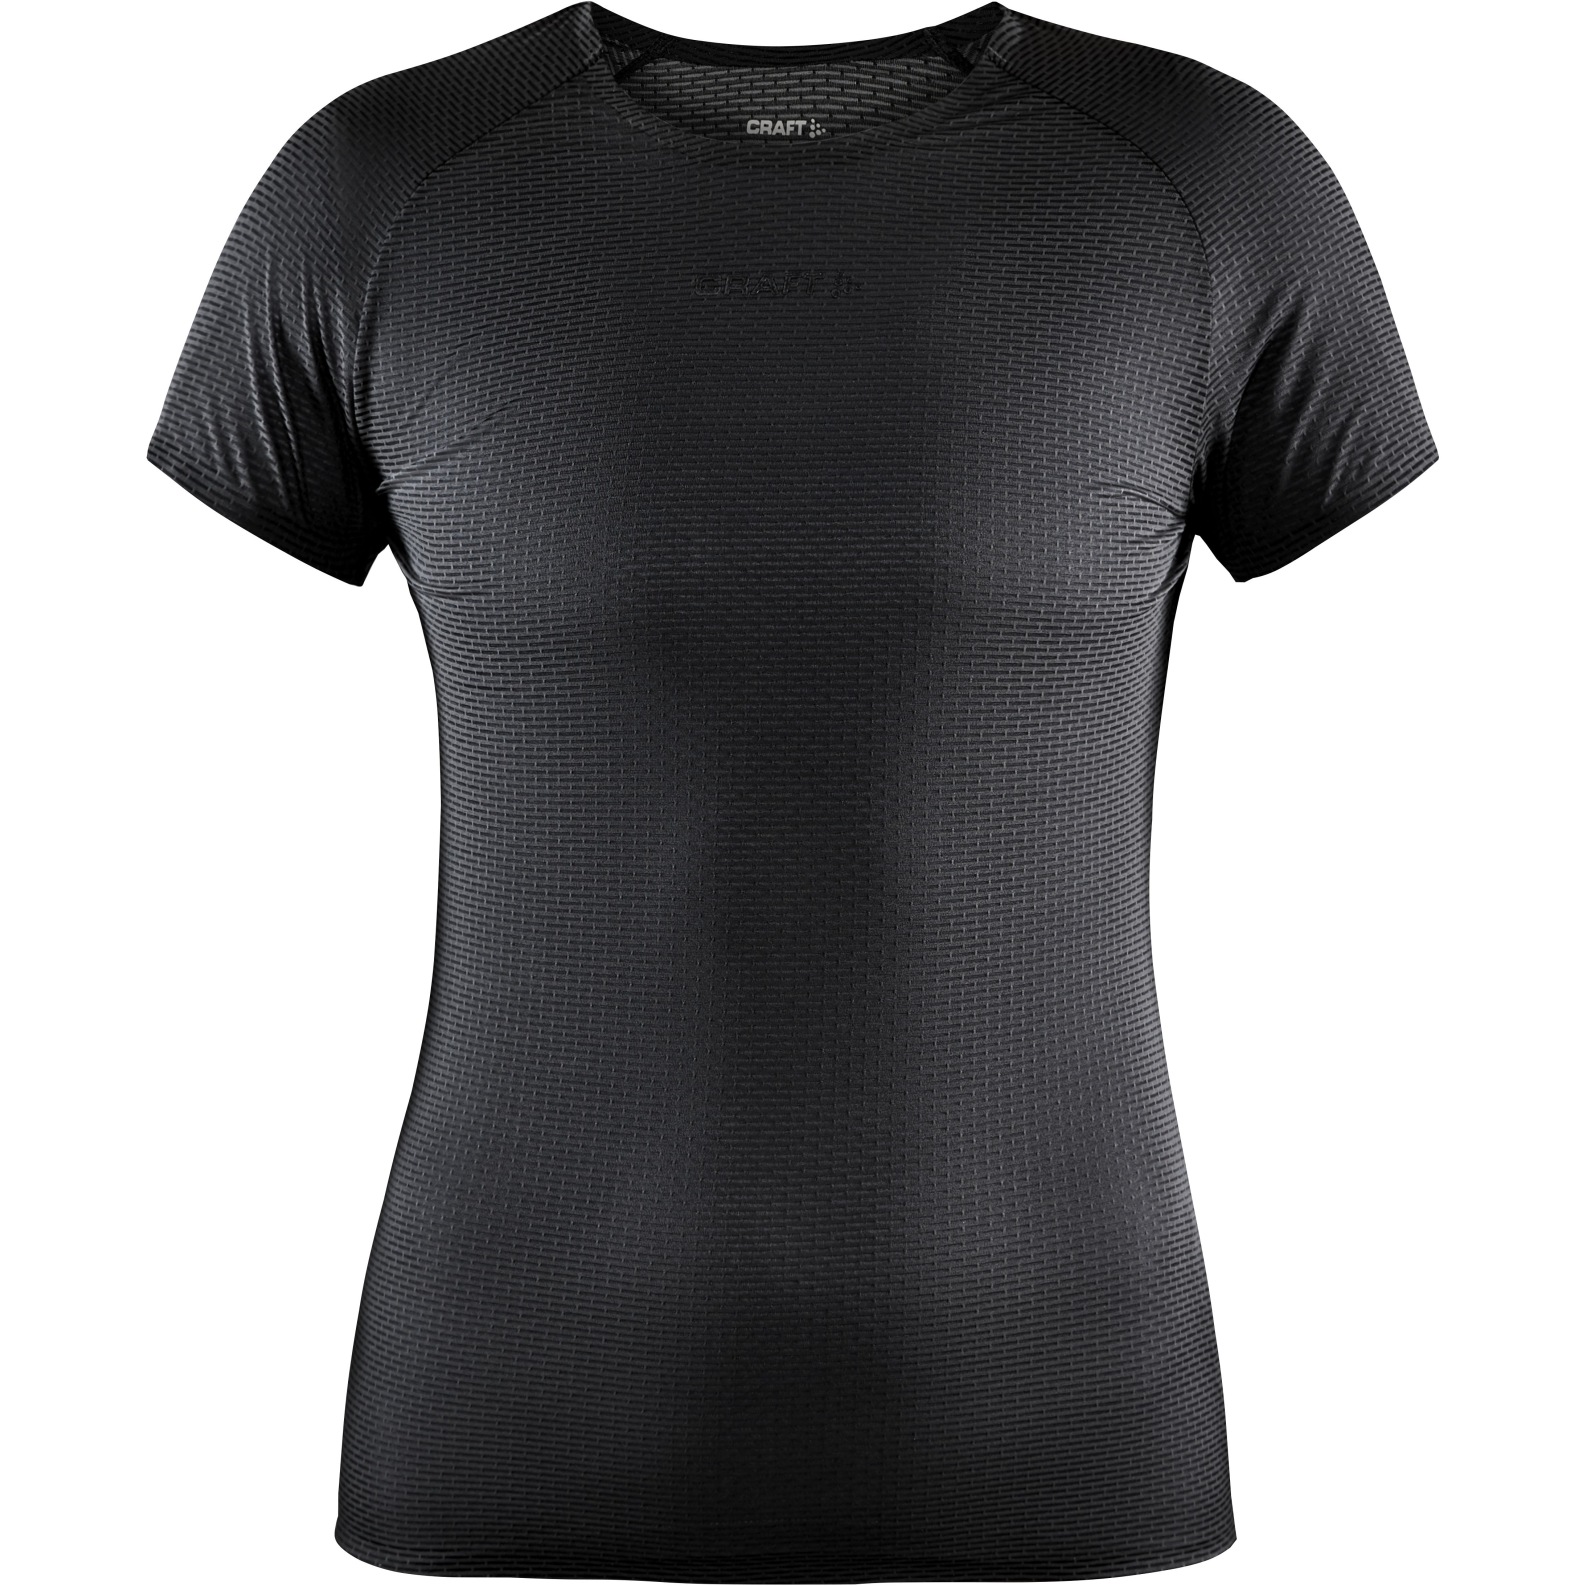 Produktbild von CRAFT Nanoweight T-Shirt Damen - Black